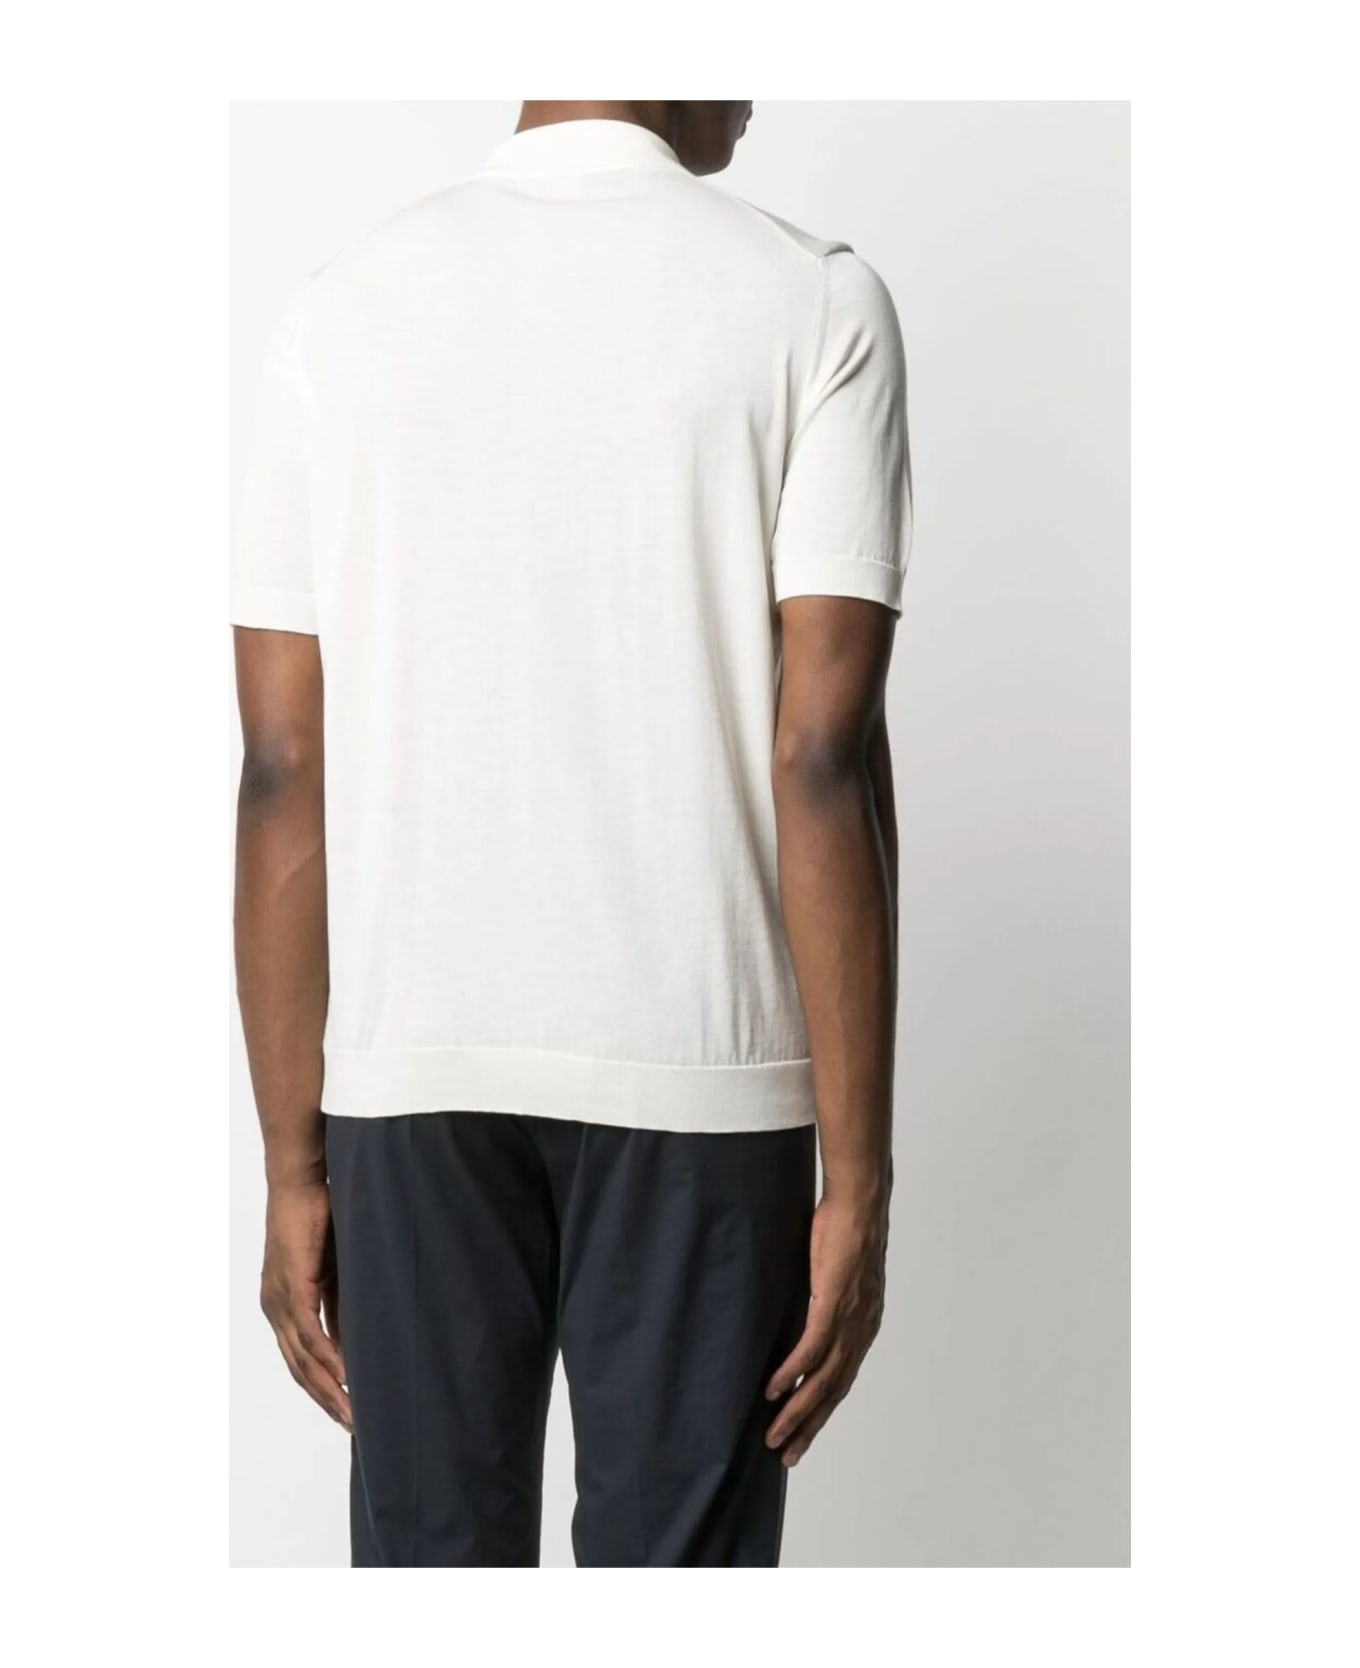 Drumohr Ivory White Cotton T-shirt - White ポロシャツ